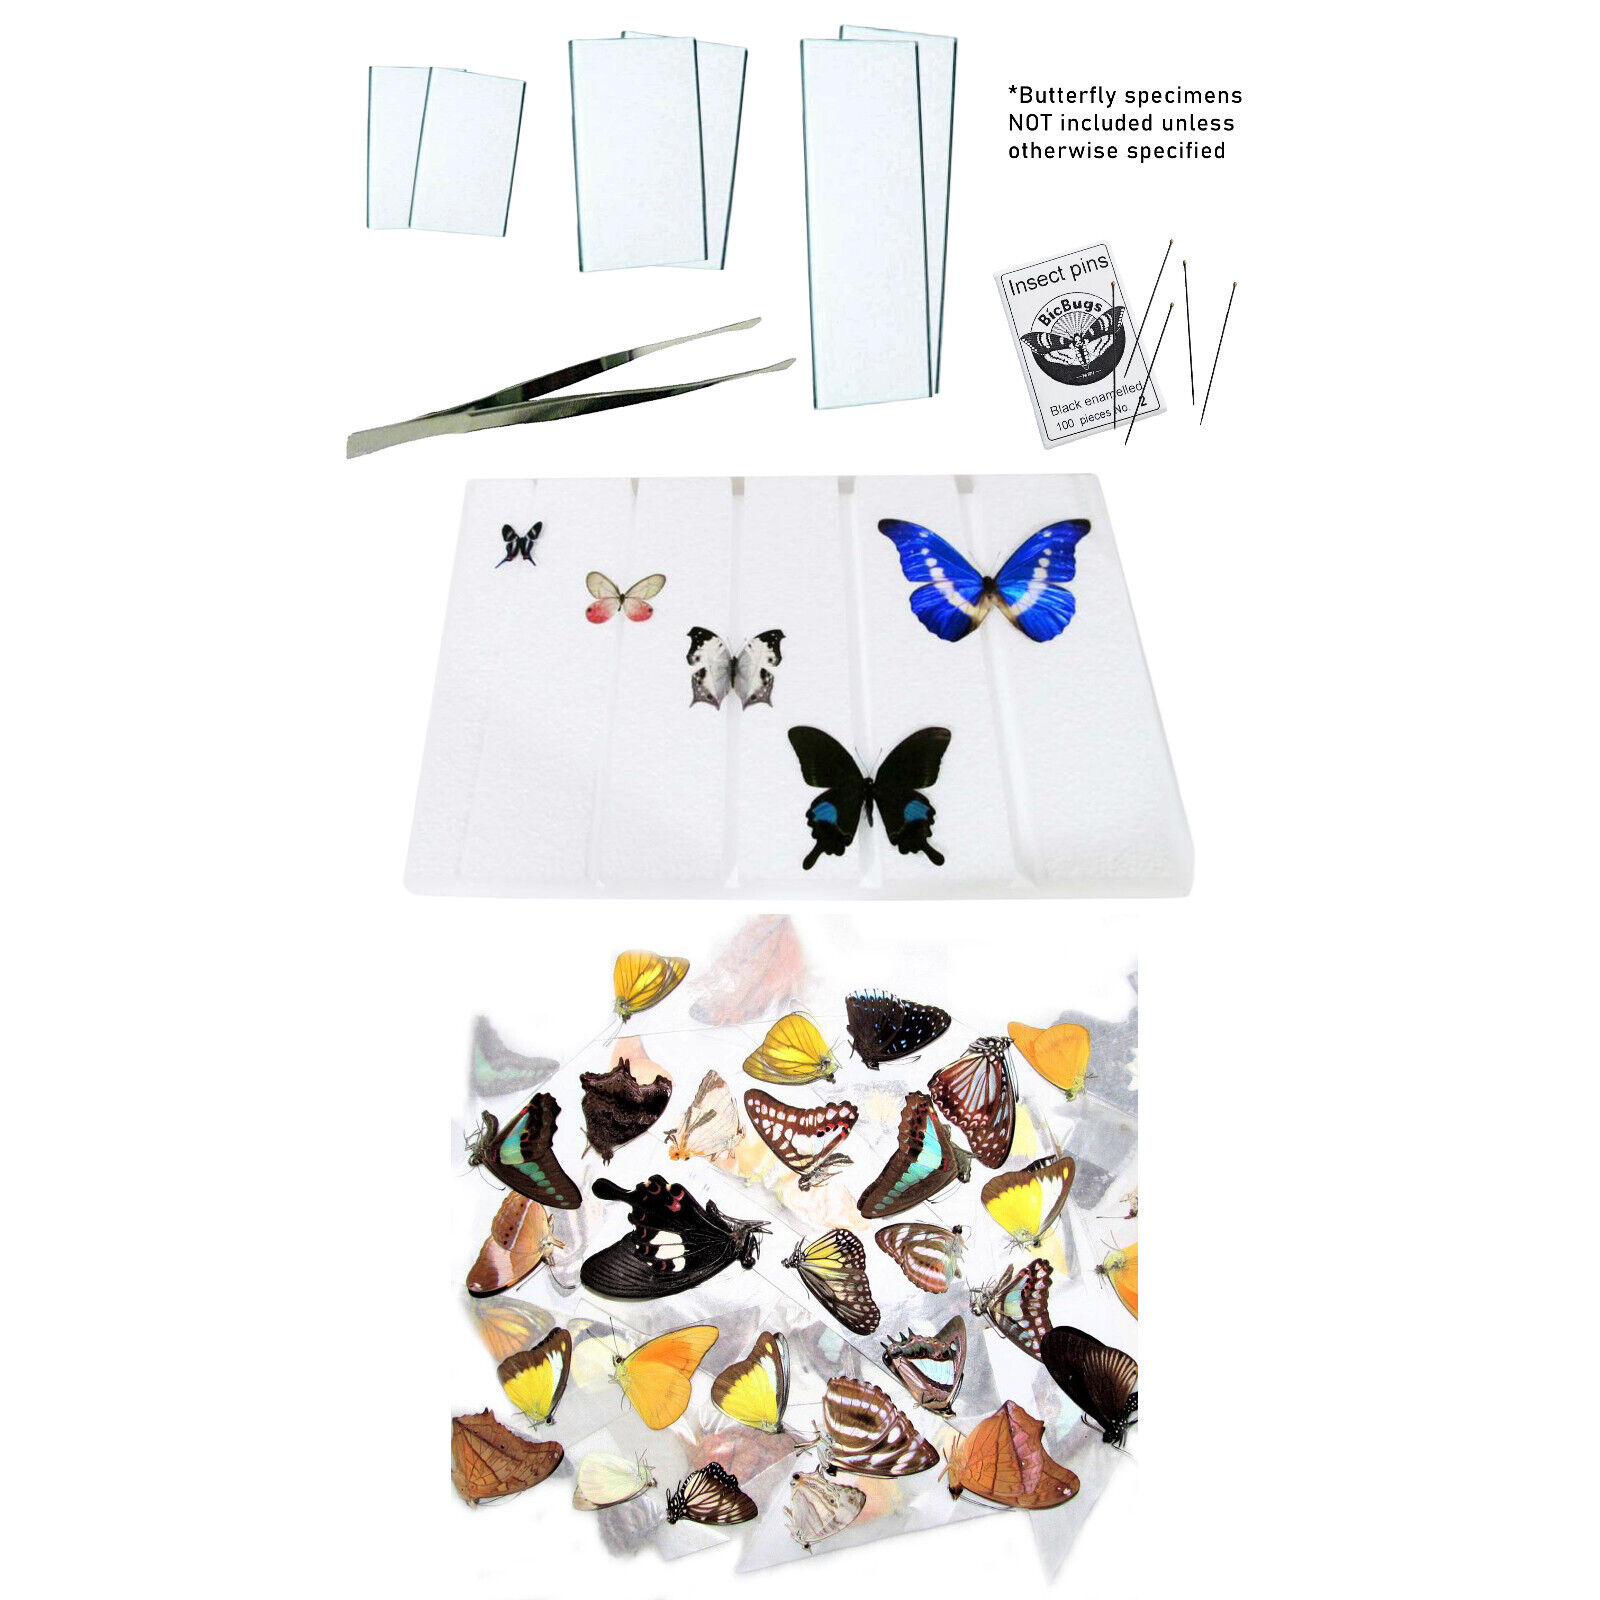 BicBugs pinning kit - kit + unmounted moths/butterflies